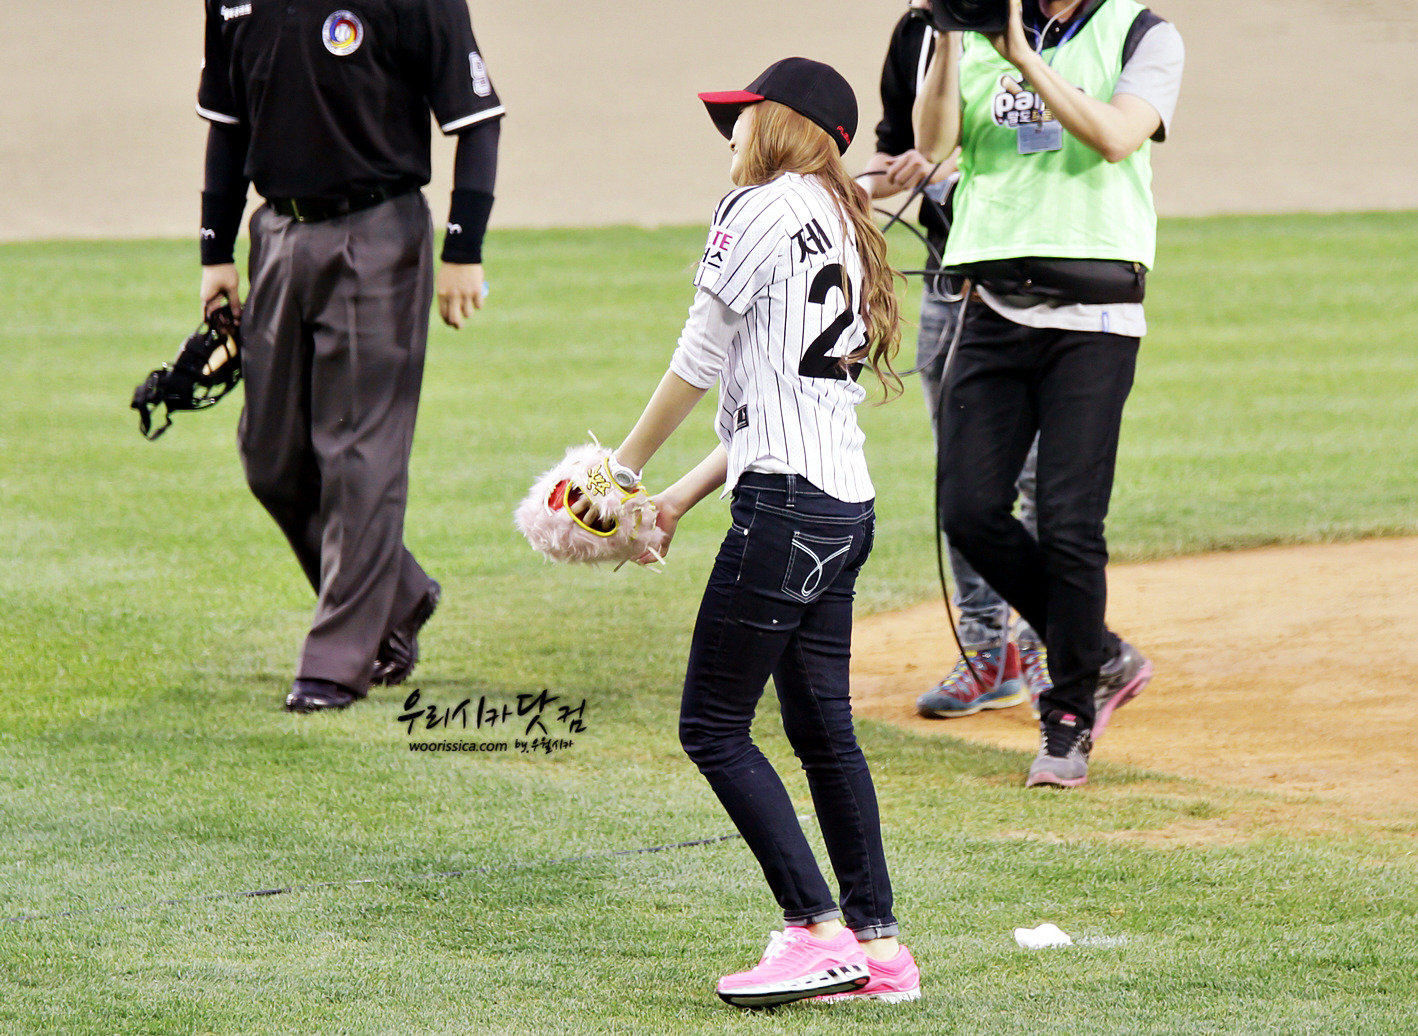 [PIC][11-05-2012]Jessica ném bóng mở màn cho trận đấu bóng chày giữa LG & Samsung chiều nay - Page 3 186E04494FAE63E425CD0A